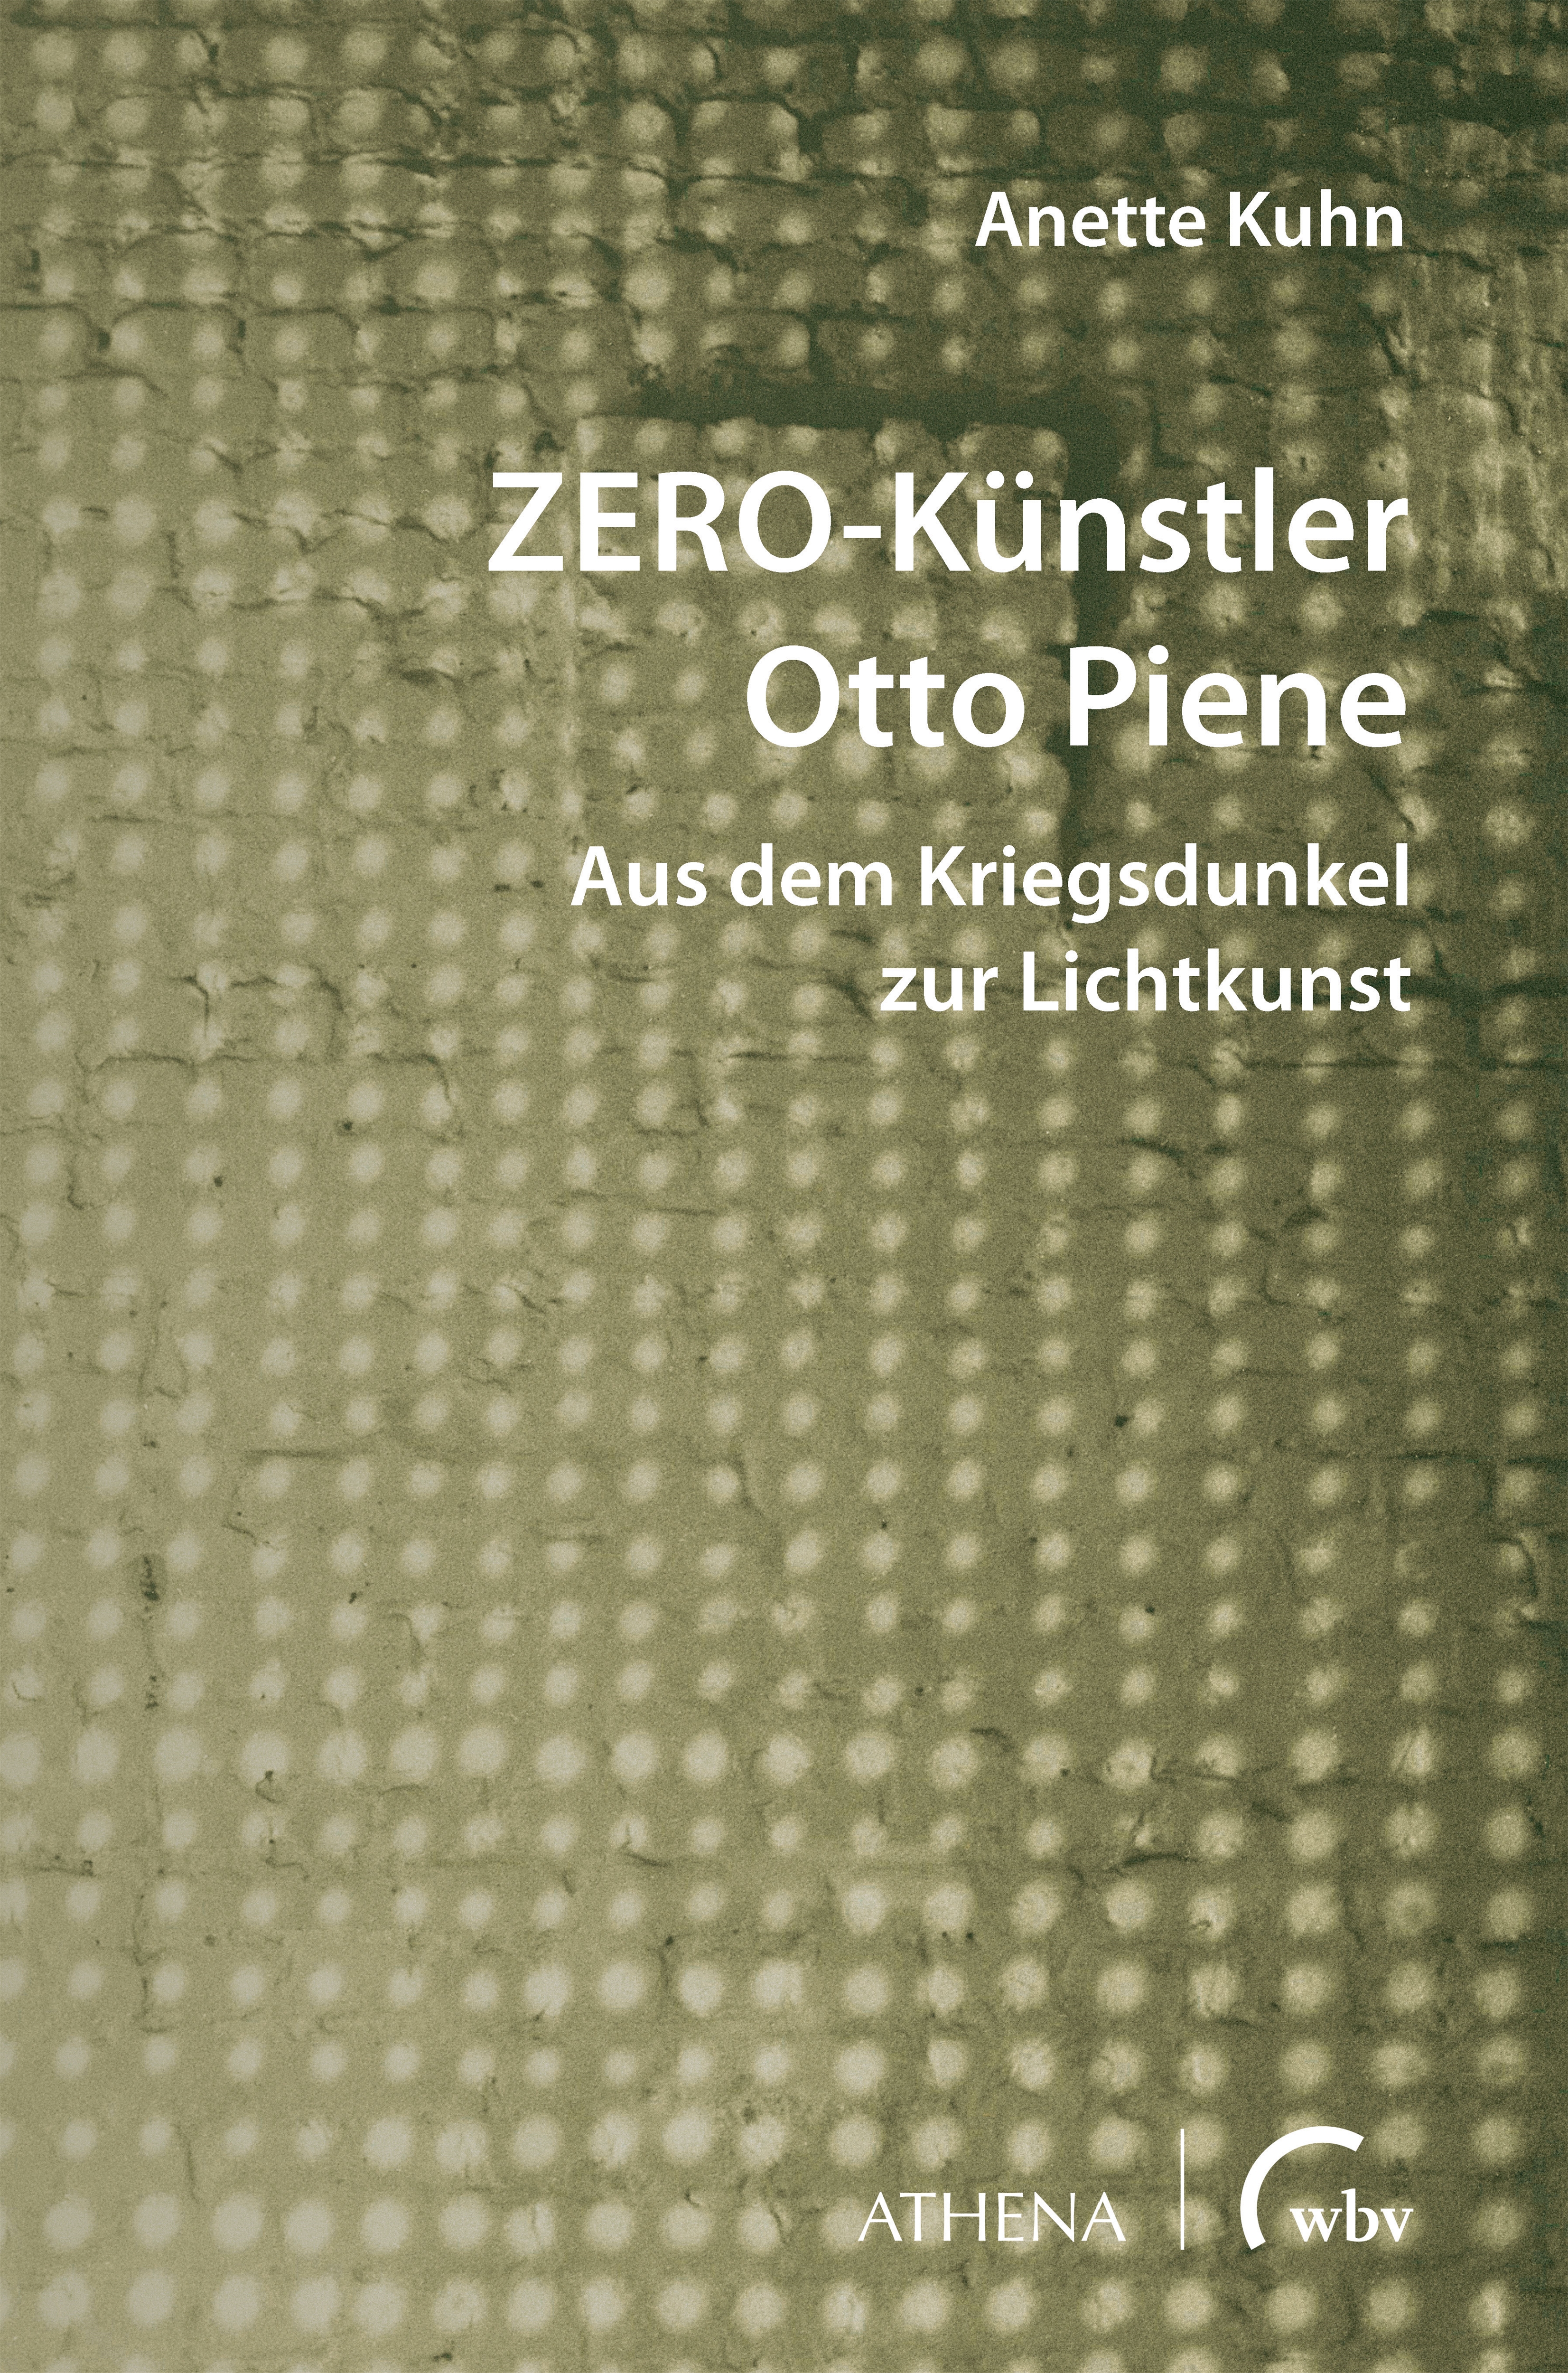 ZERO-Künstler Otto Piene